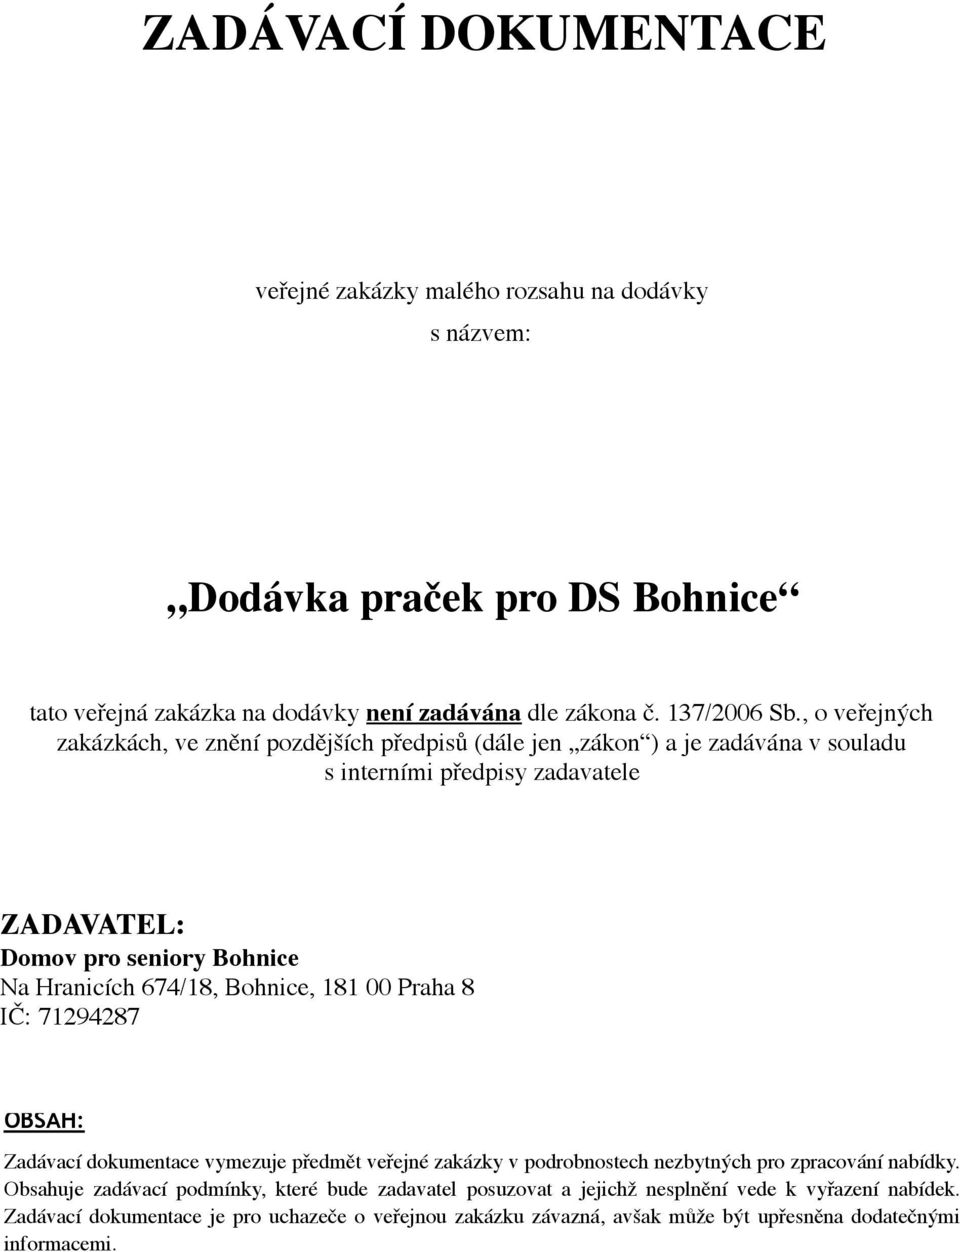 674/18, Bohnice, 181 00 Praha 8 IČ: 71294287 OBSAH: Zadávací dokumentace vymezuje předmět veřejné zakázky v podrobnostech nezbytných pro zpracování nabídky.